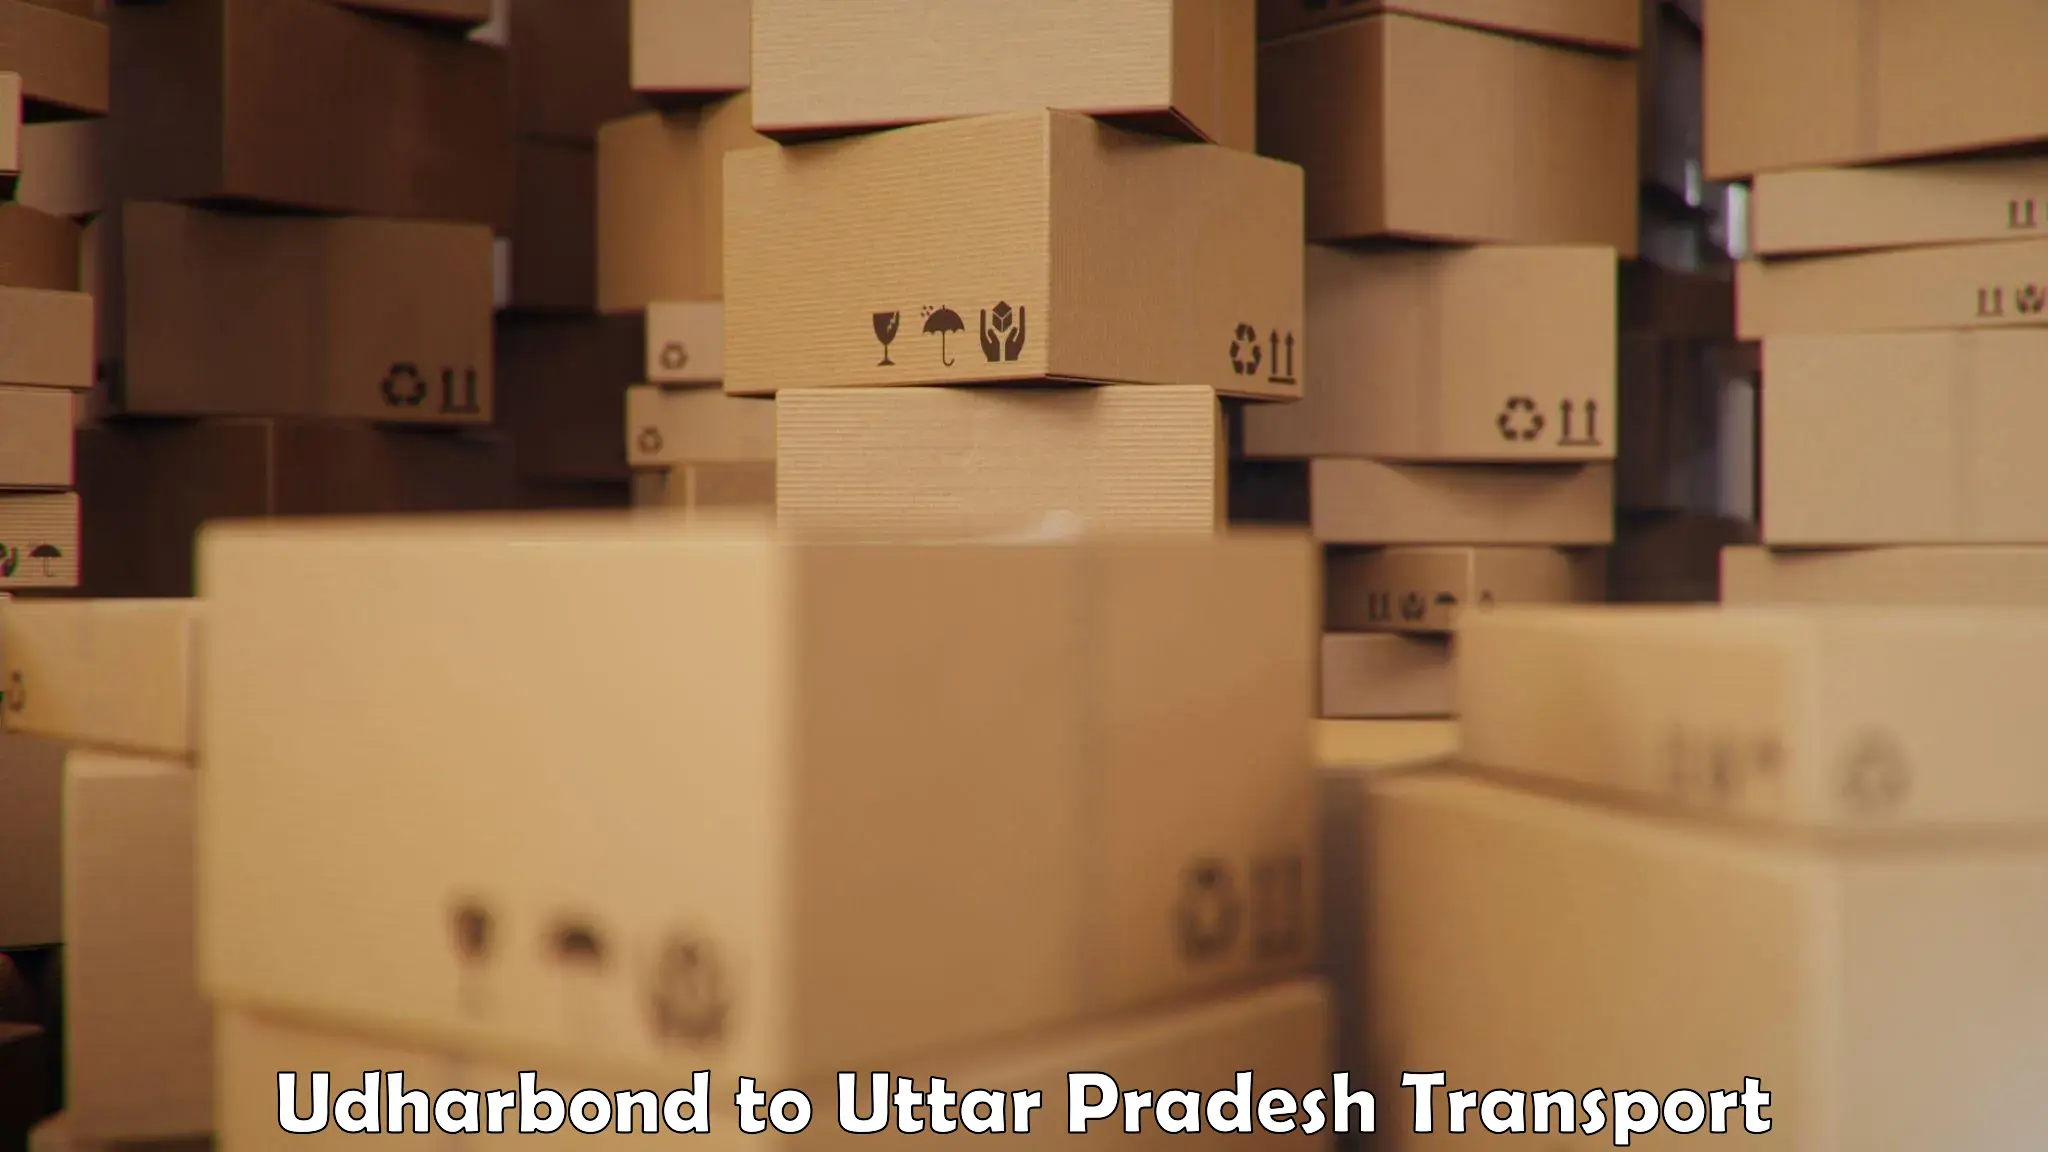 Luggage transport services Udharbond to IIT Varanasi